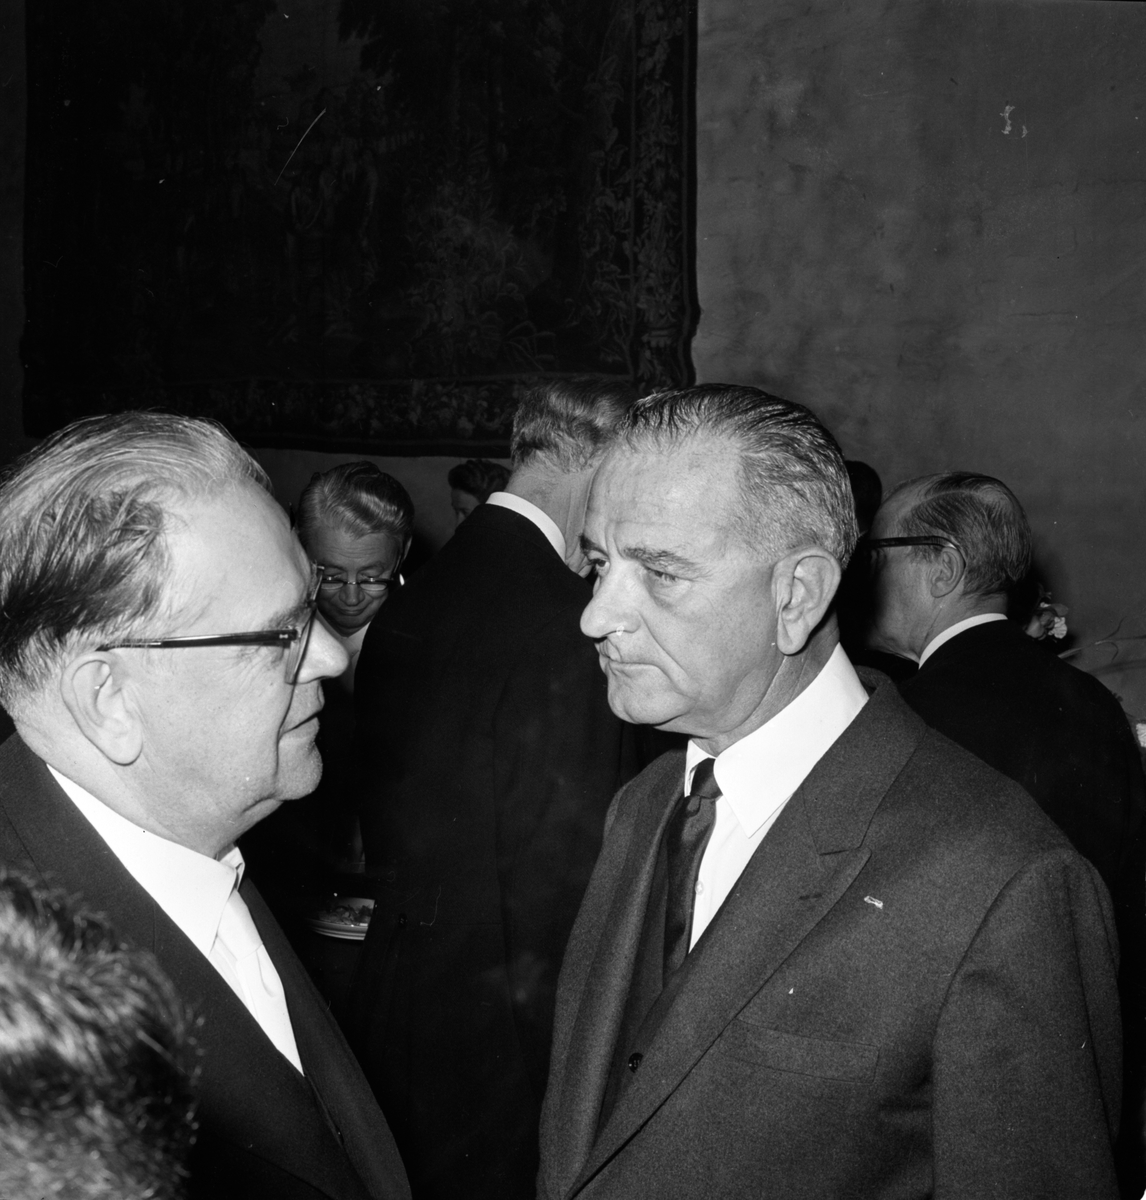 Statsminister Tage Erlander och vice president Lyndon B Johnson på Dag Hammarskjölds jordfästning. Mottagningen på Uppsala slott, Uppsala 29 september 1961